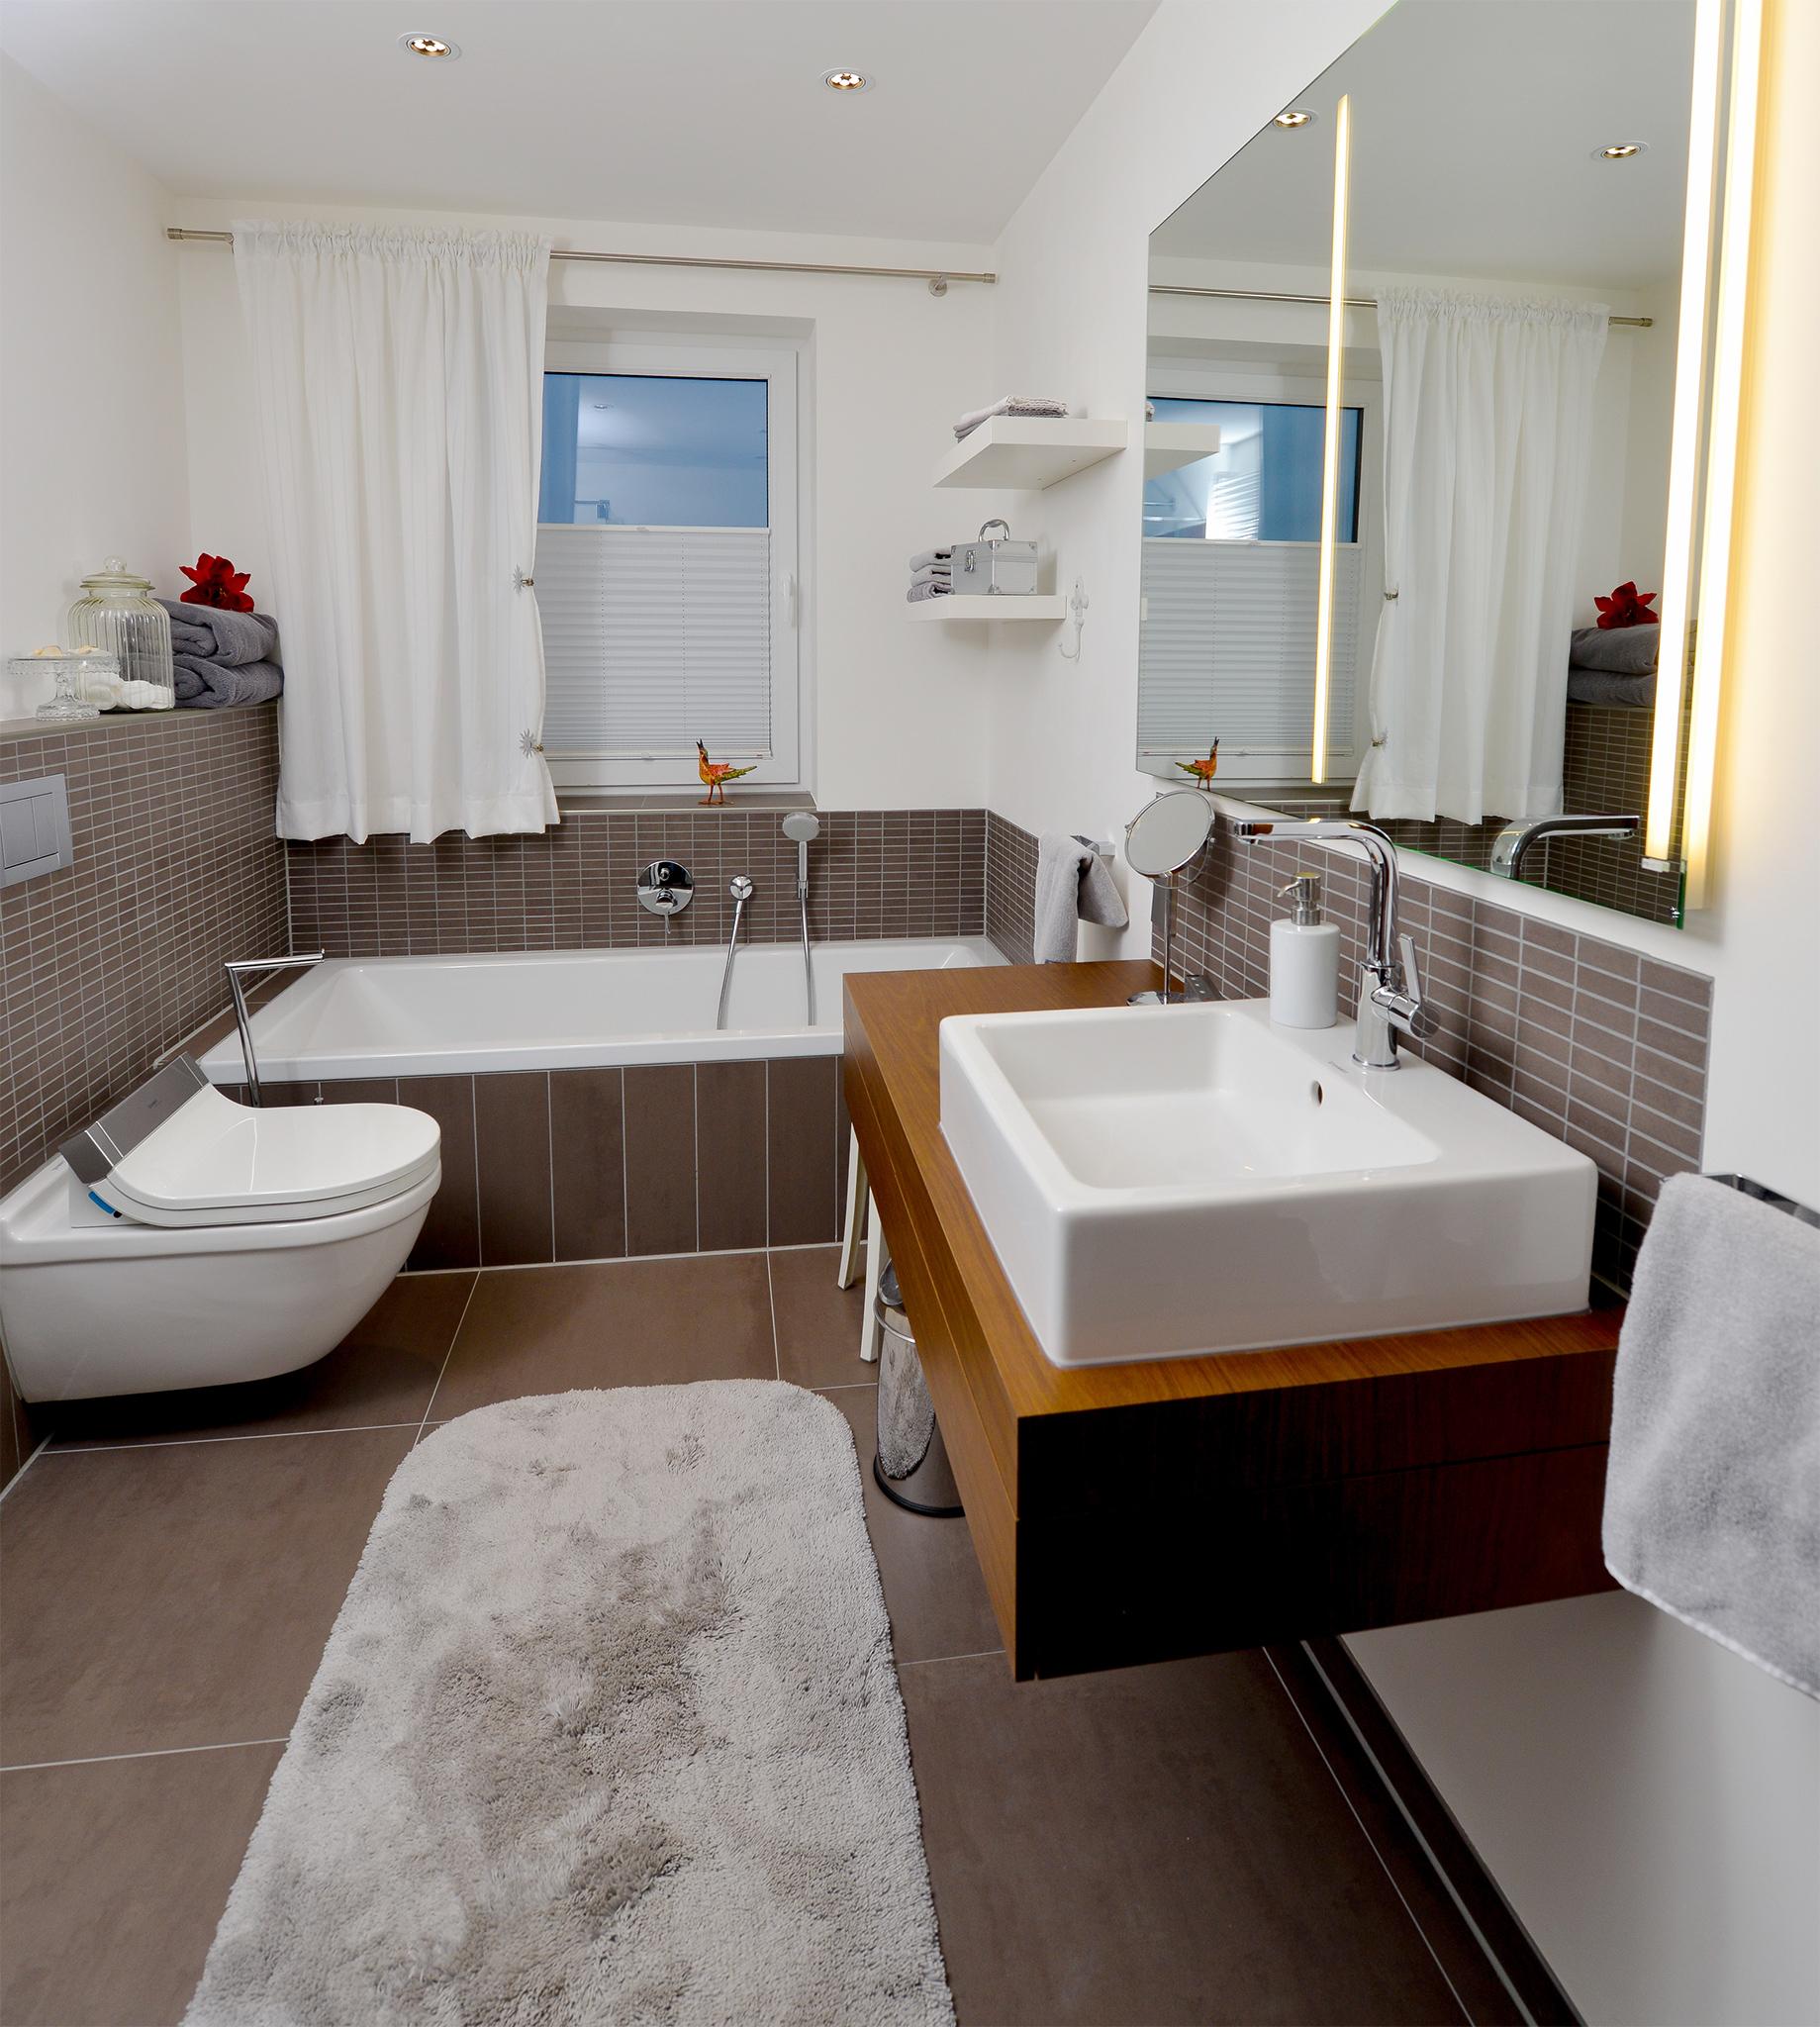 Das wohnliche Komplettbad lässt keine Wünsche offen #badewanne #badezimmer #grauefliesen ©HEIMWOHL GmbH